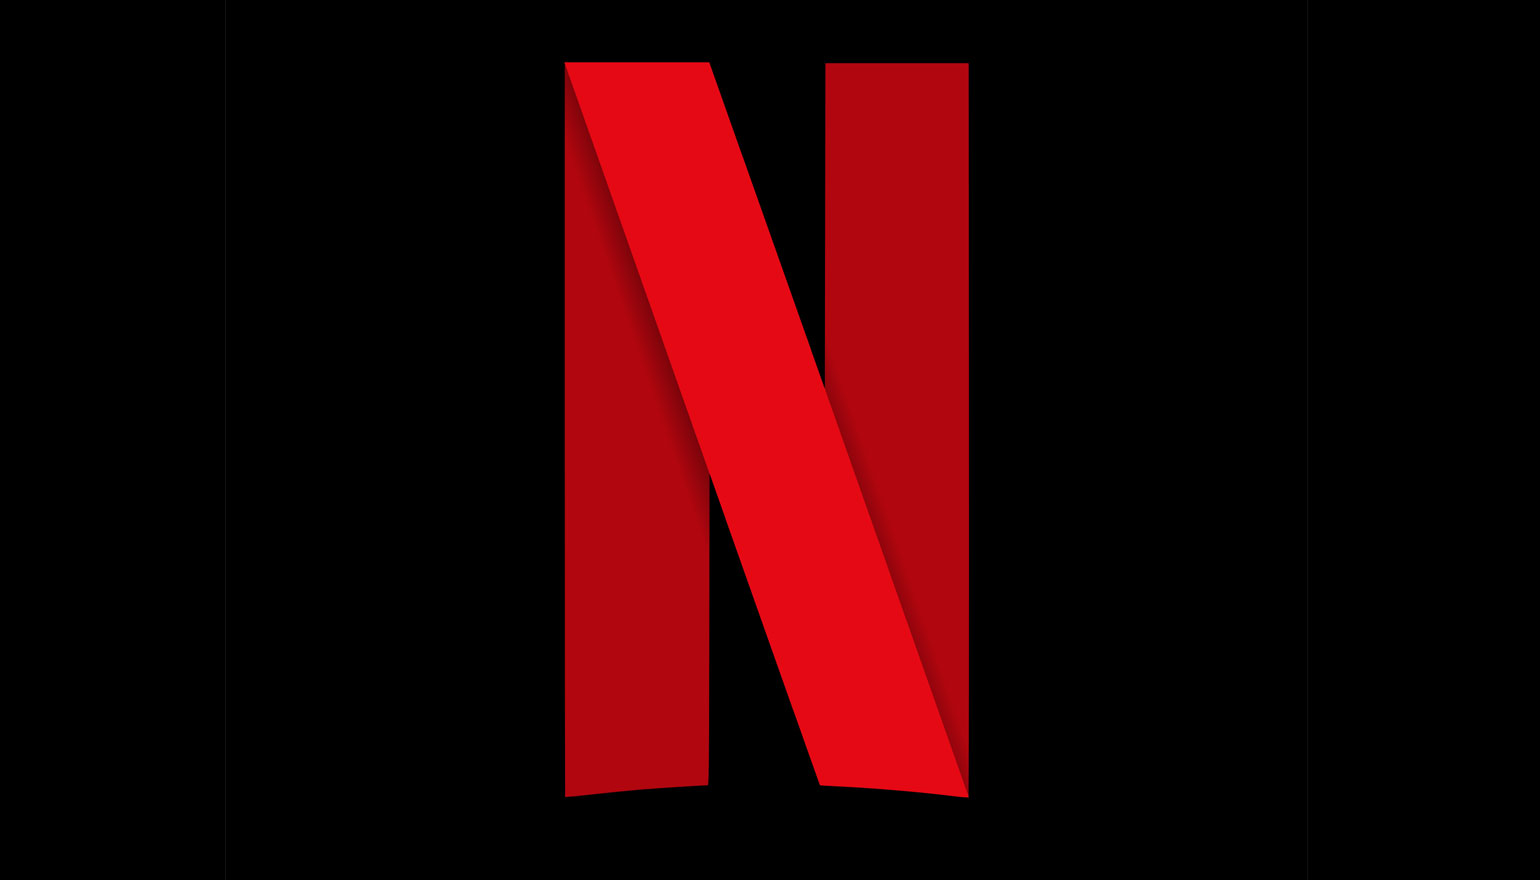 Netflix - Logo